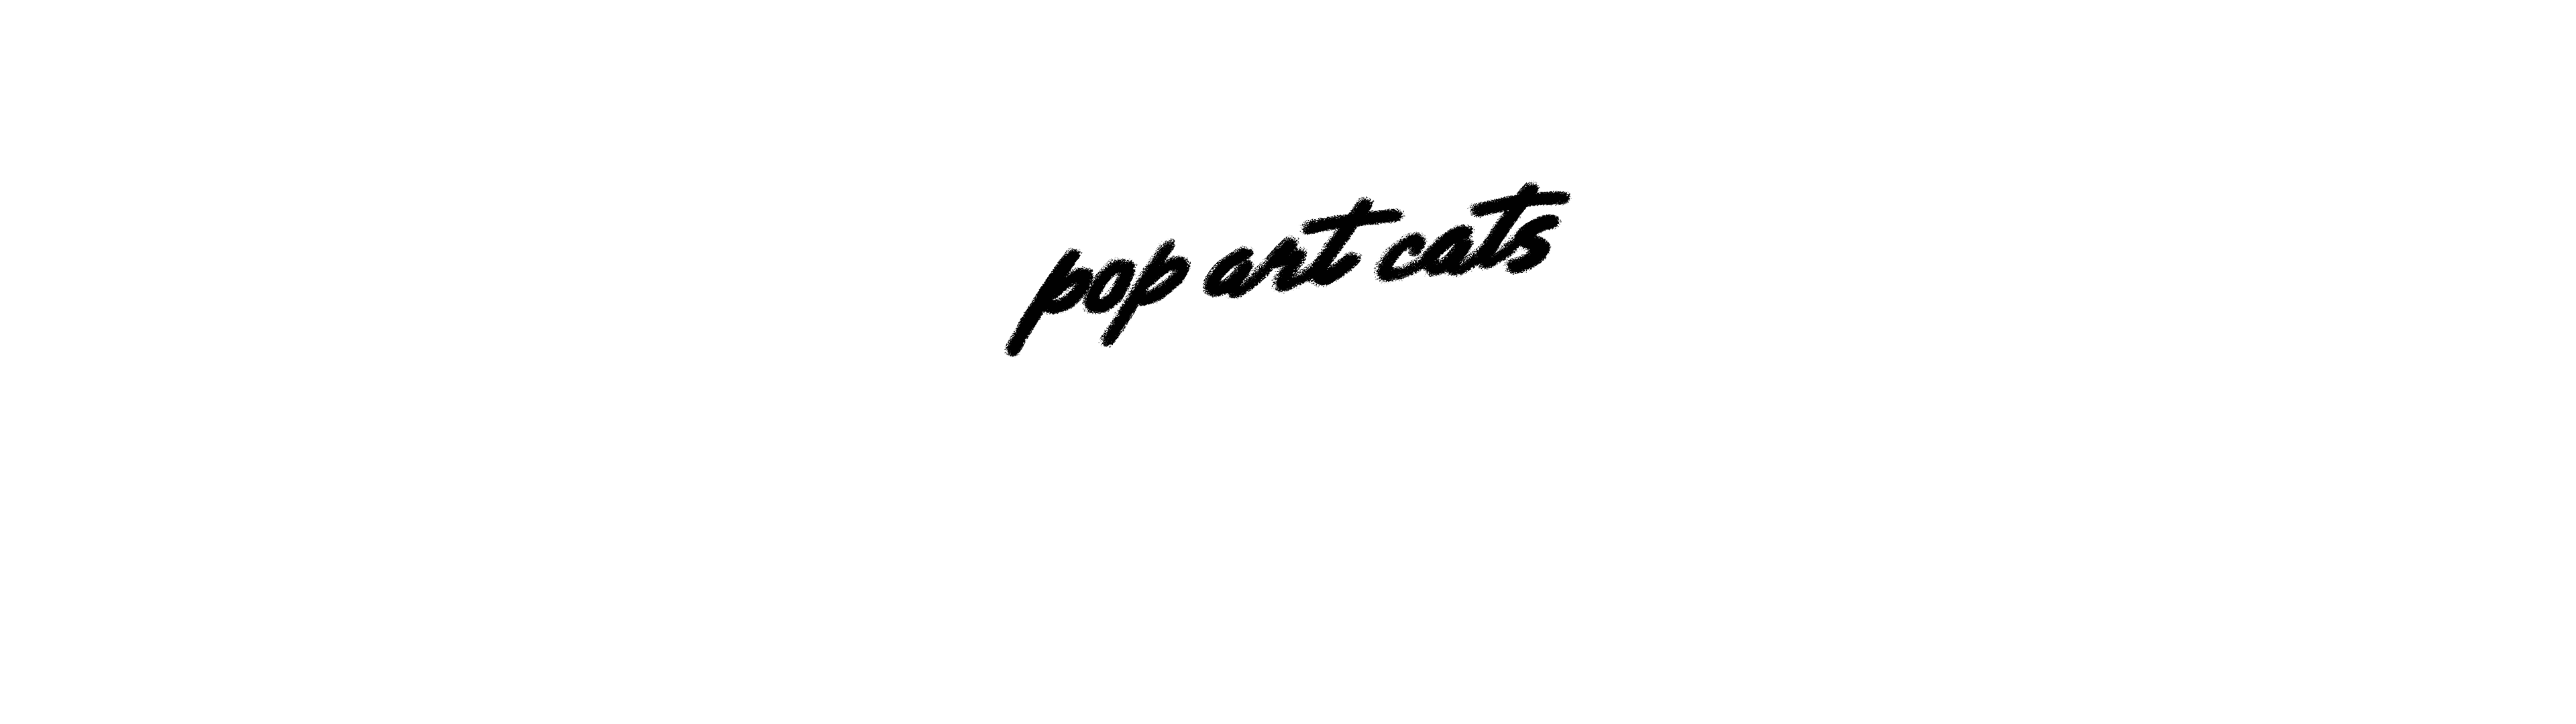 Pop Art Cats by Matt Chessco